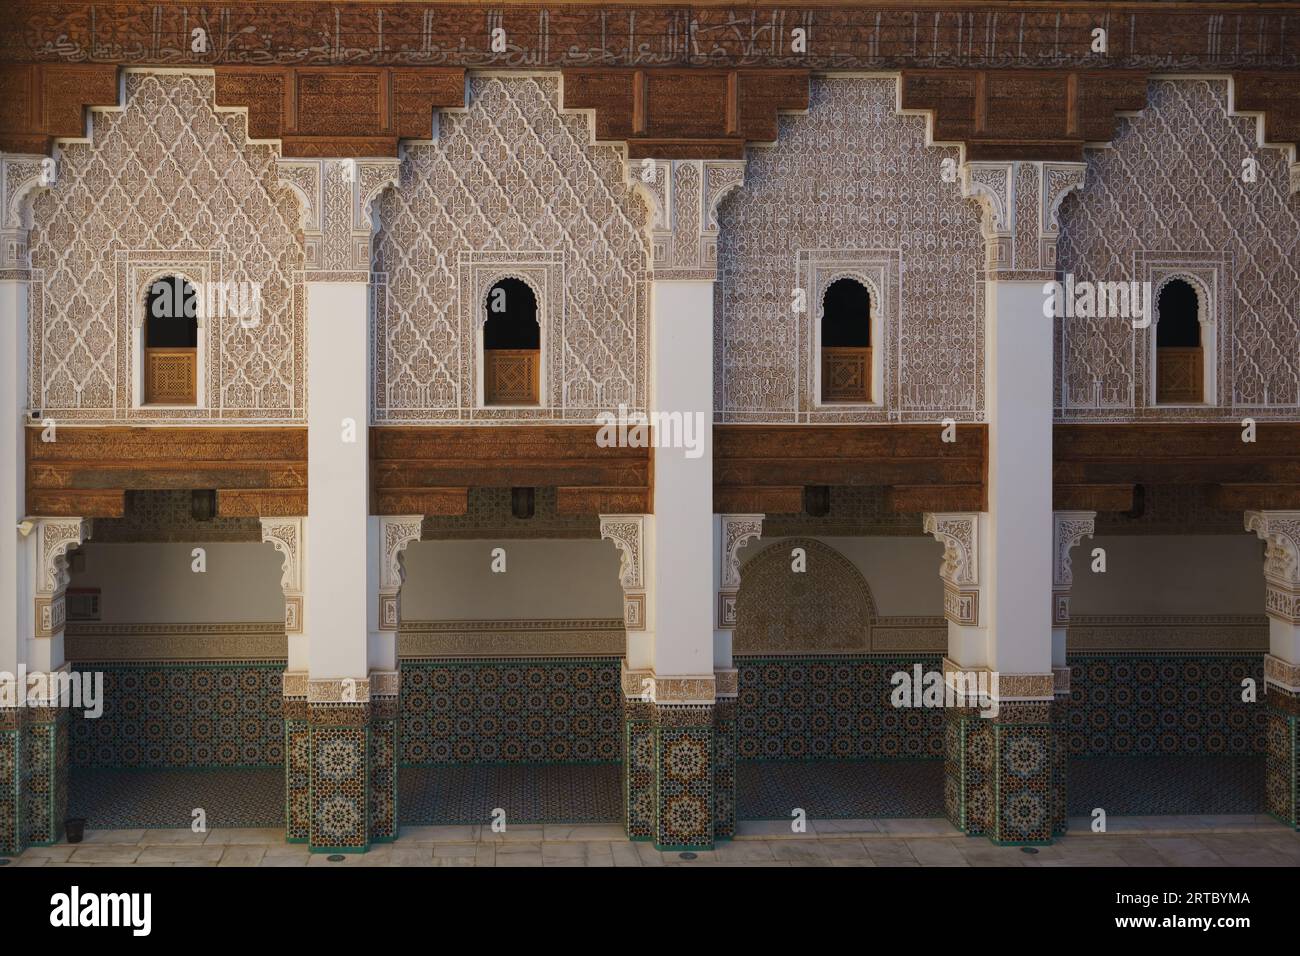 Afrique du Nord. Maroc. Marrakech. Madrasa Ben Youssef. La madrassah la plus grande et la plus importante du Maroc Banque D'Images